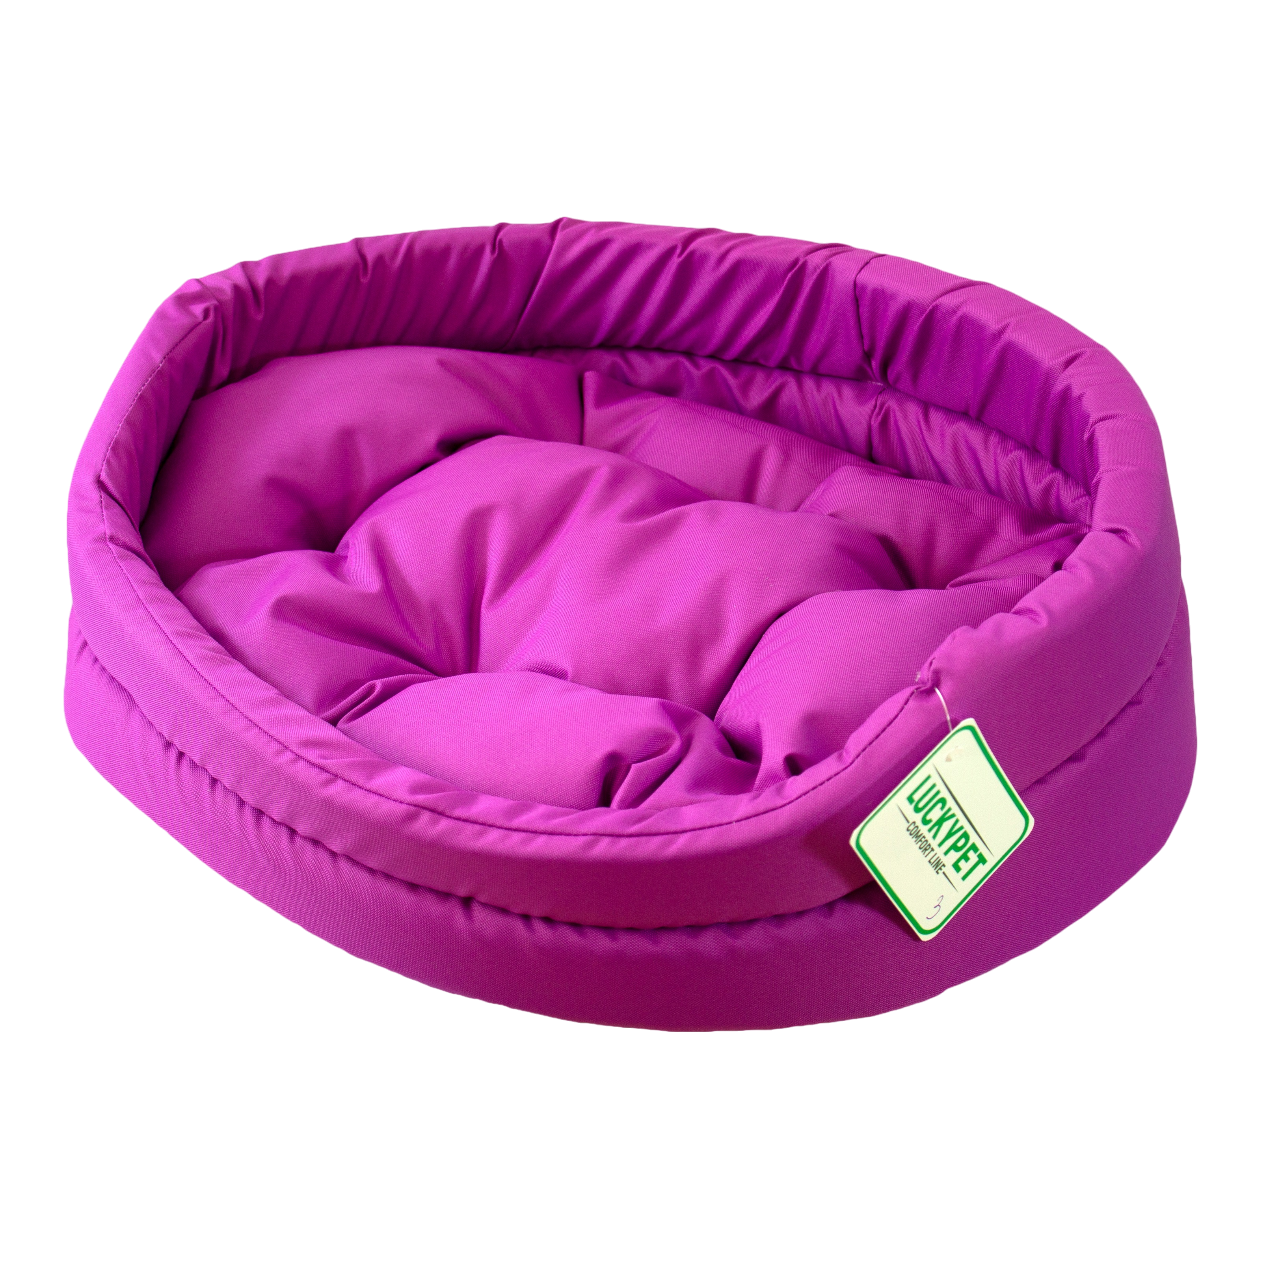 Лежак Luсky Pet Зірка №4, 55x65 см, фіолетовий - фото 1